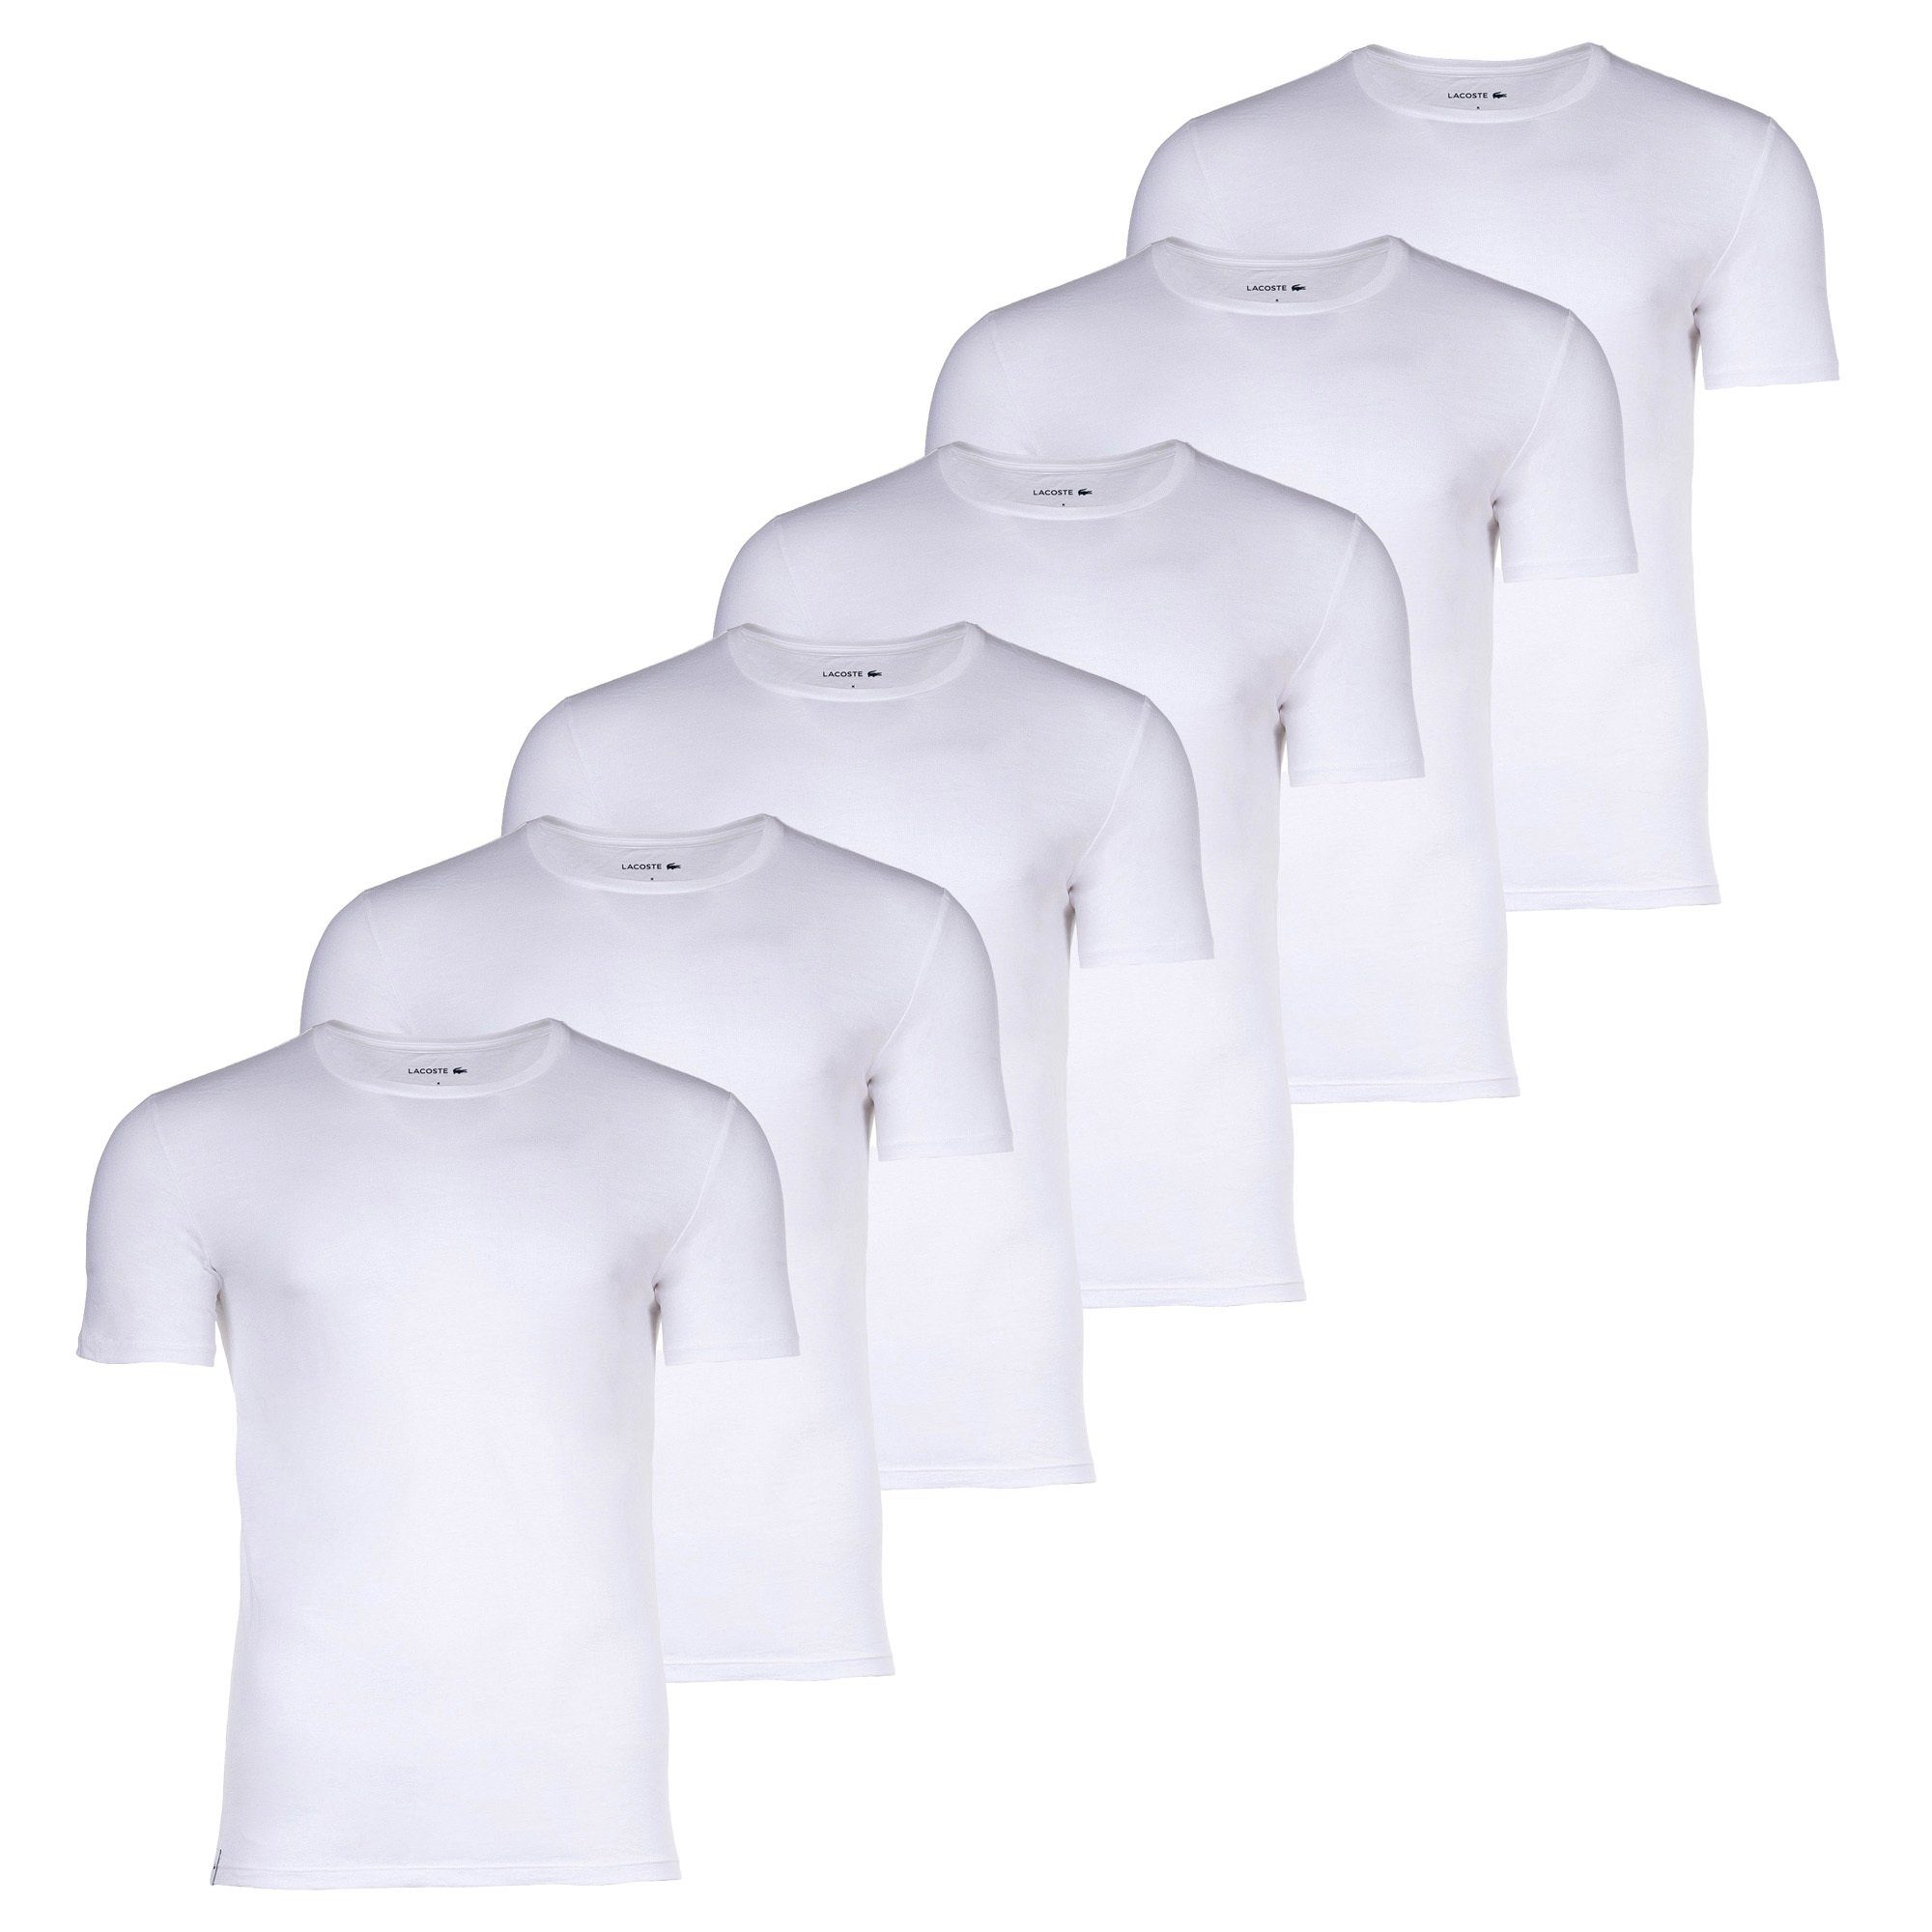 Lacoste T-Shirt Herren T-Shirts, 6er Pack - Essentials, Rundhals Weiß